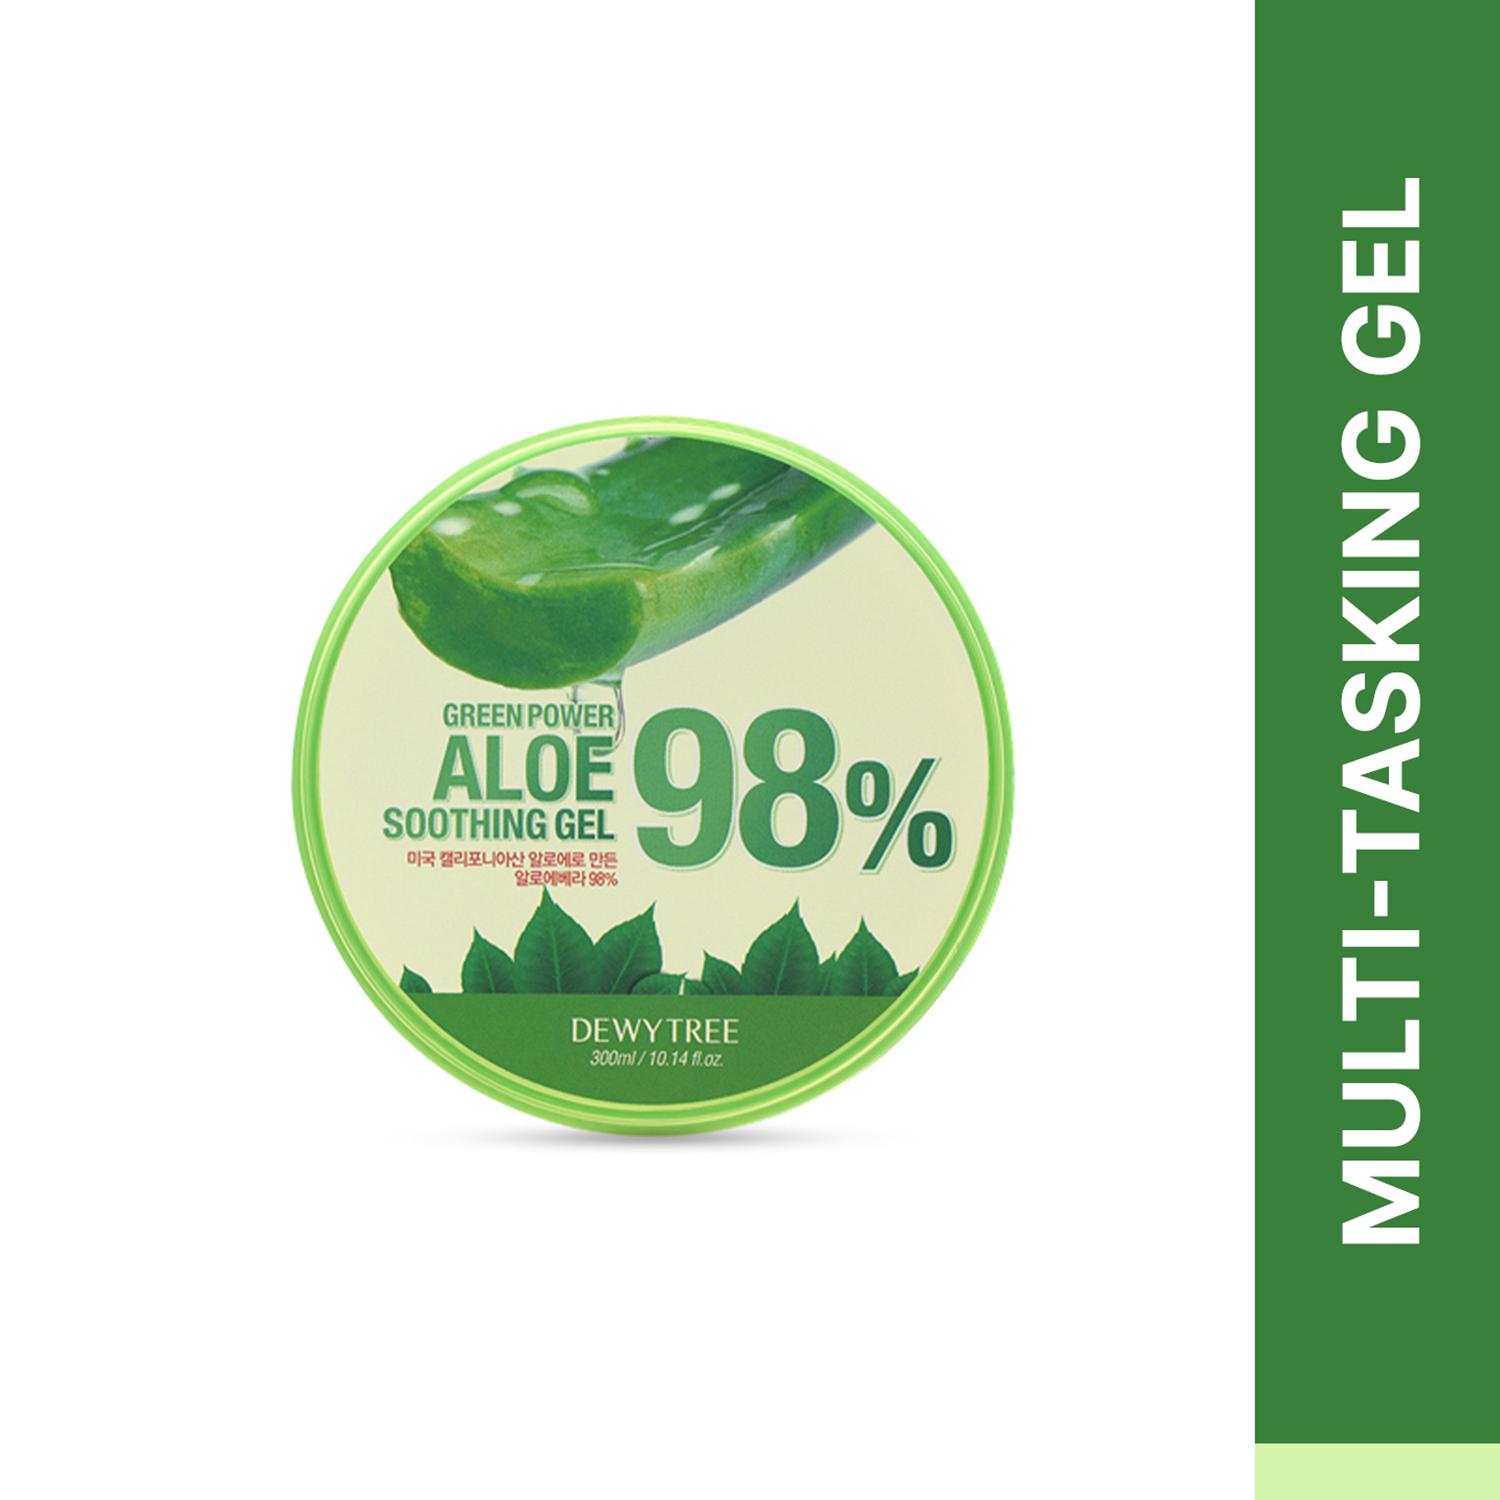 Dewytree | Dewytree Green Power 98% Aloe Soothing Gel (300ml)